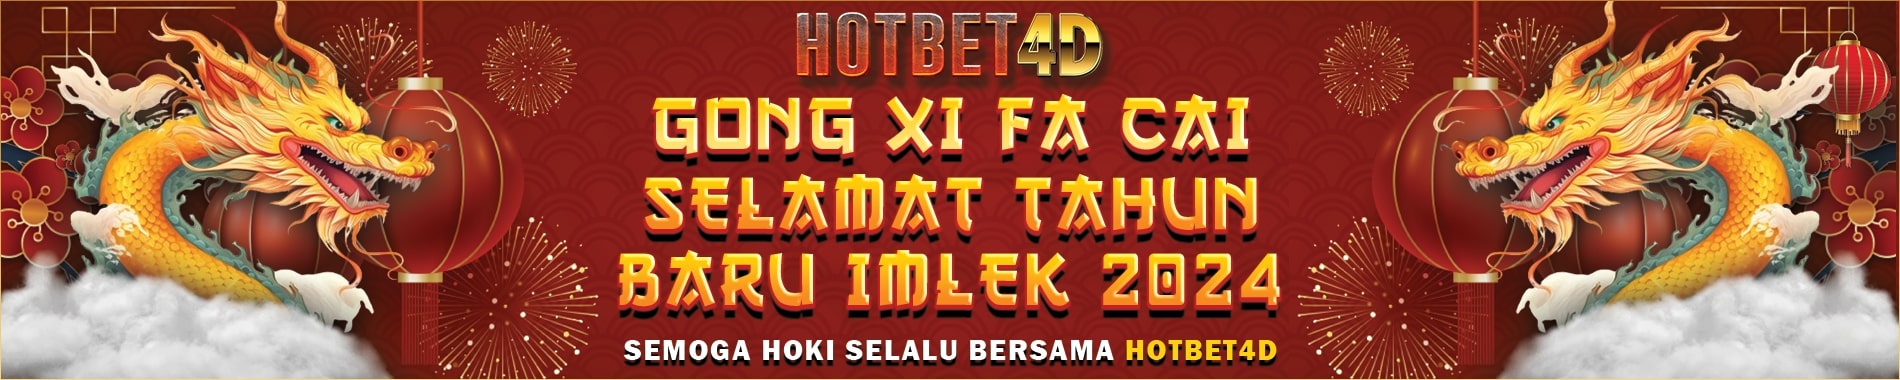 Banner Imlek 2024 Hotbet4d